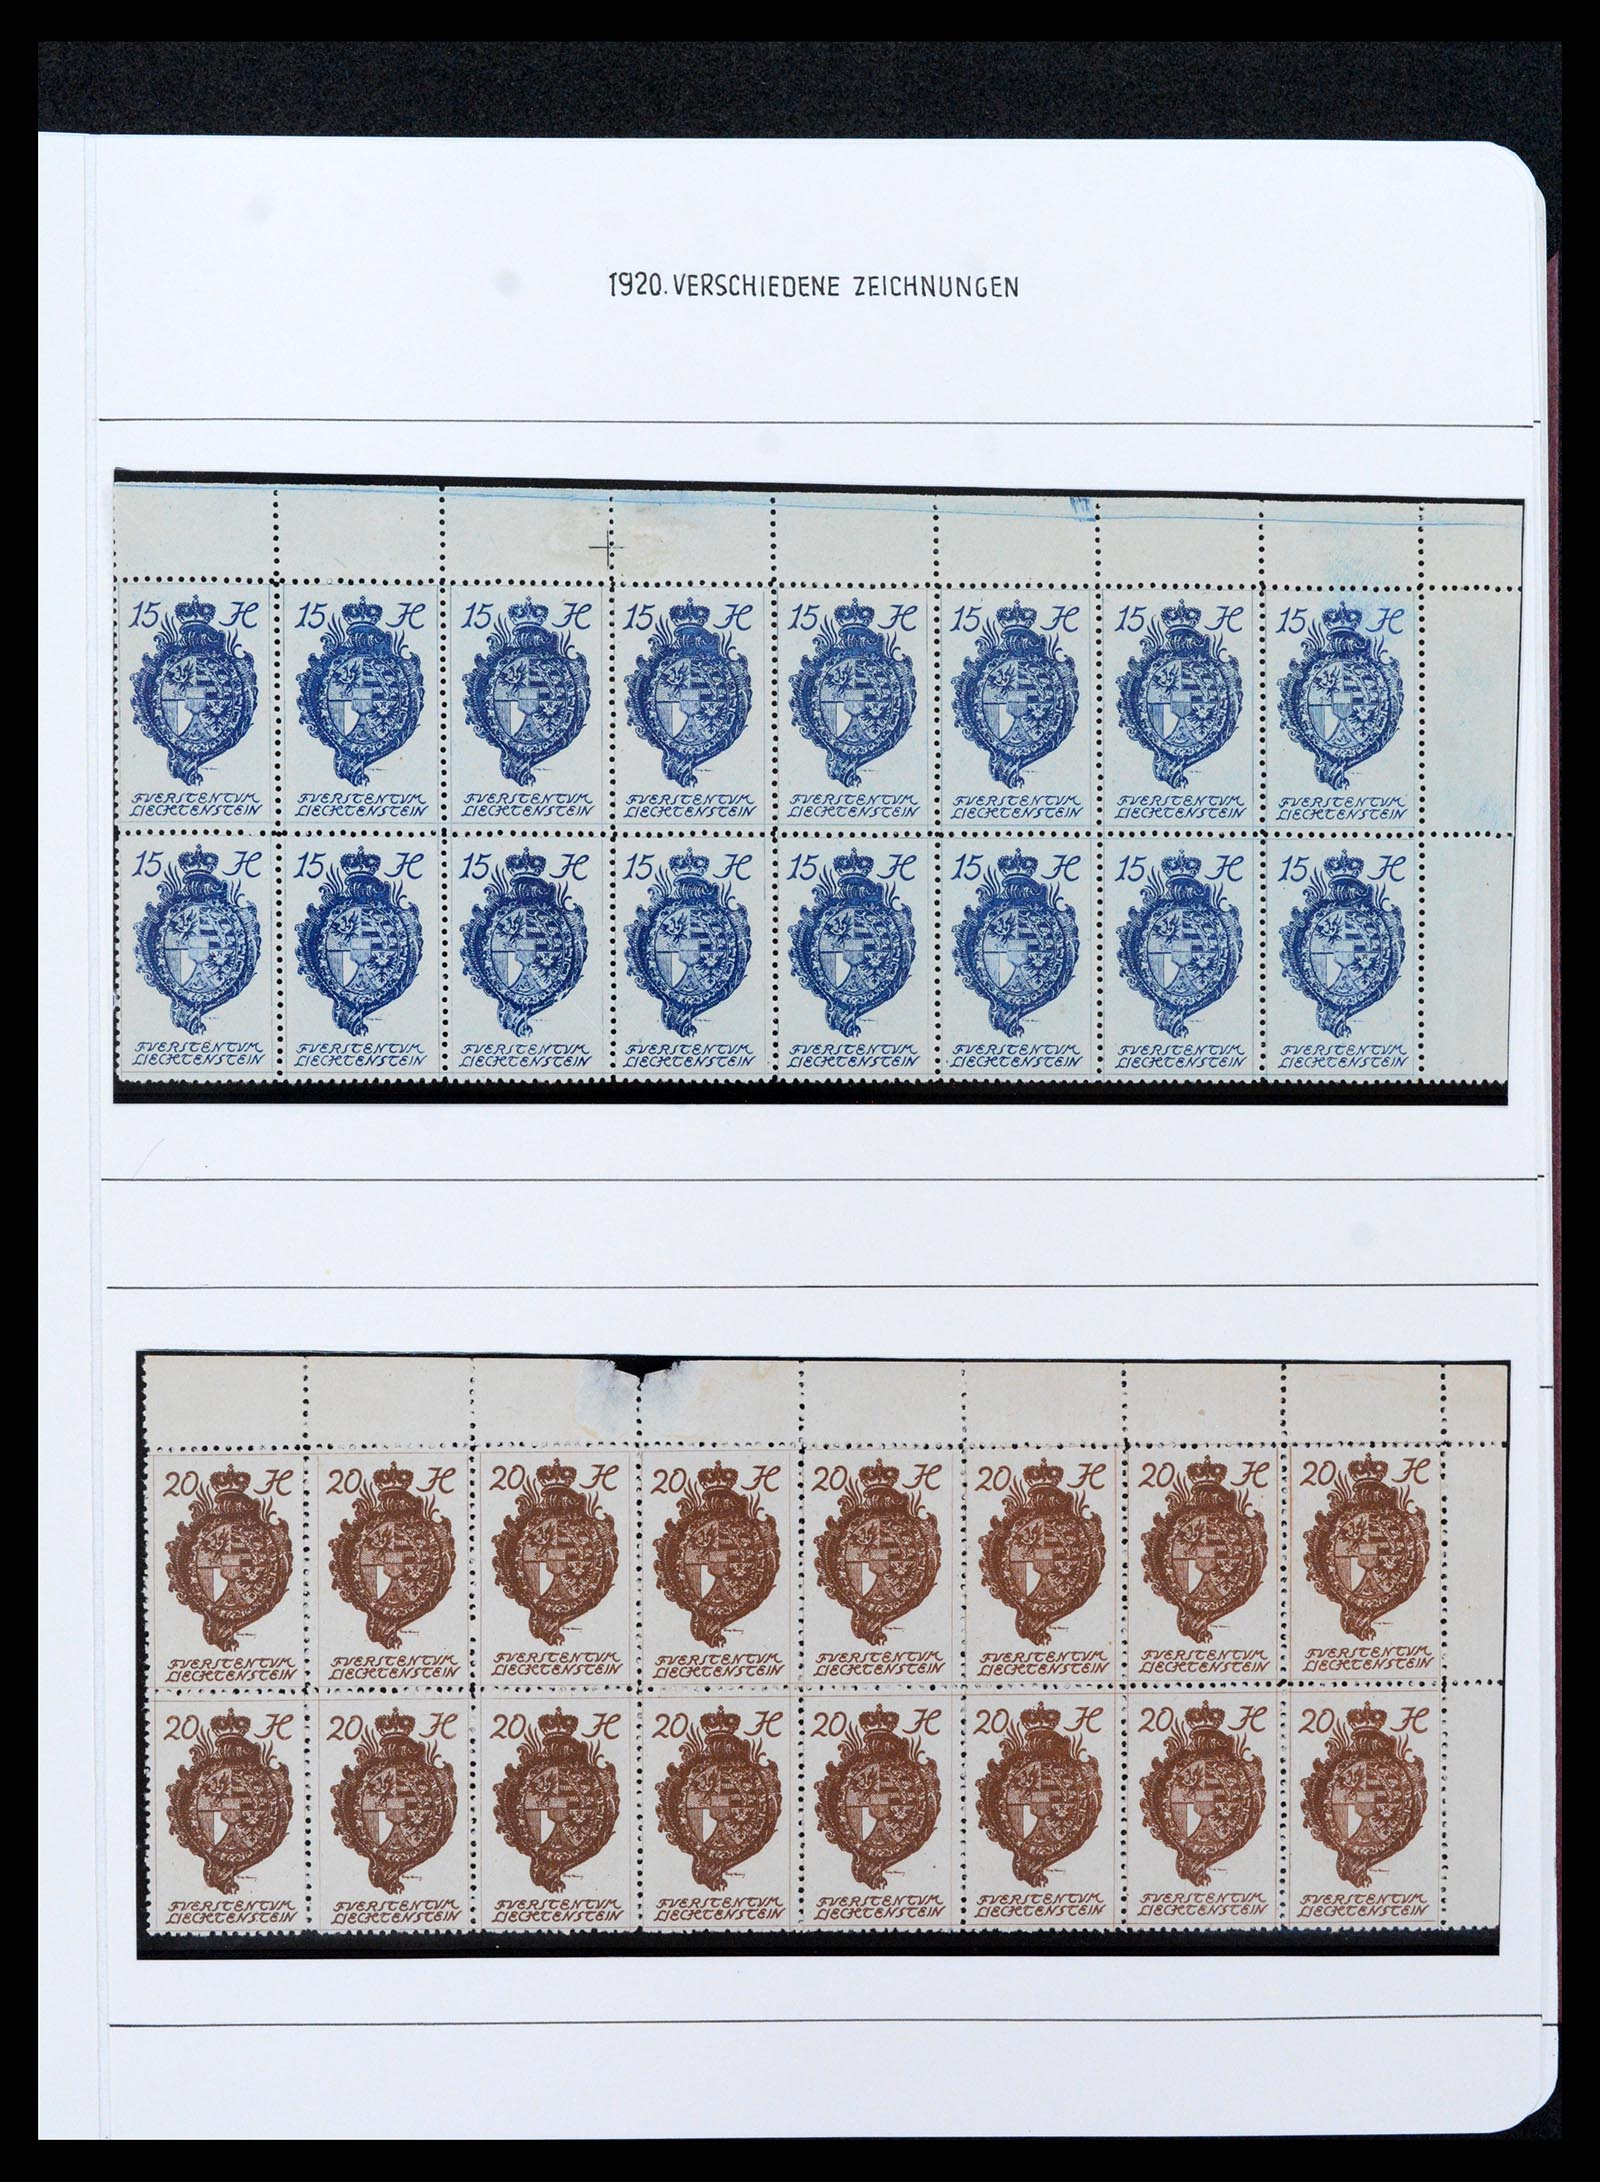 37150 0087 - Stamp collection 37150 Liechtenstein supercollection 1912-1962.